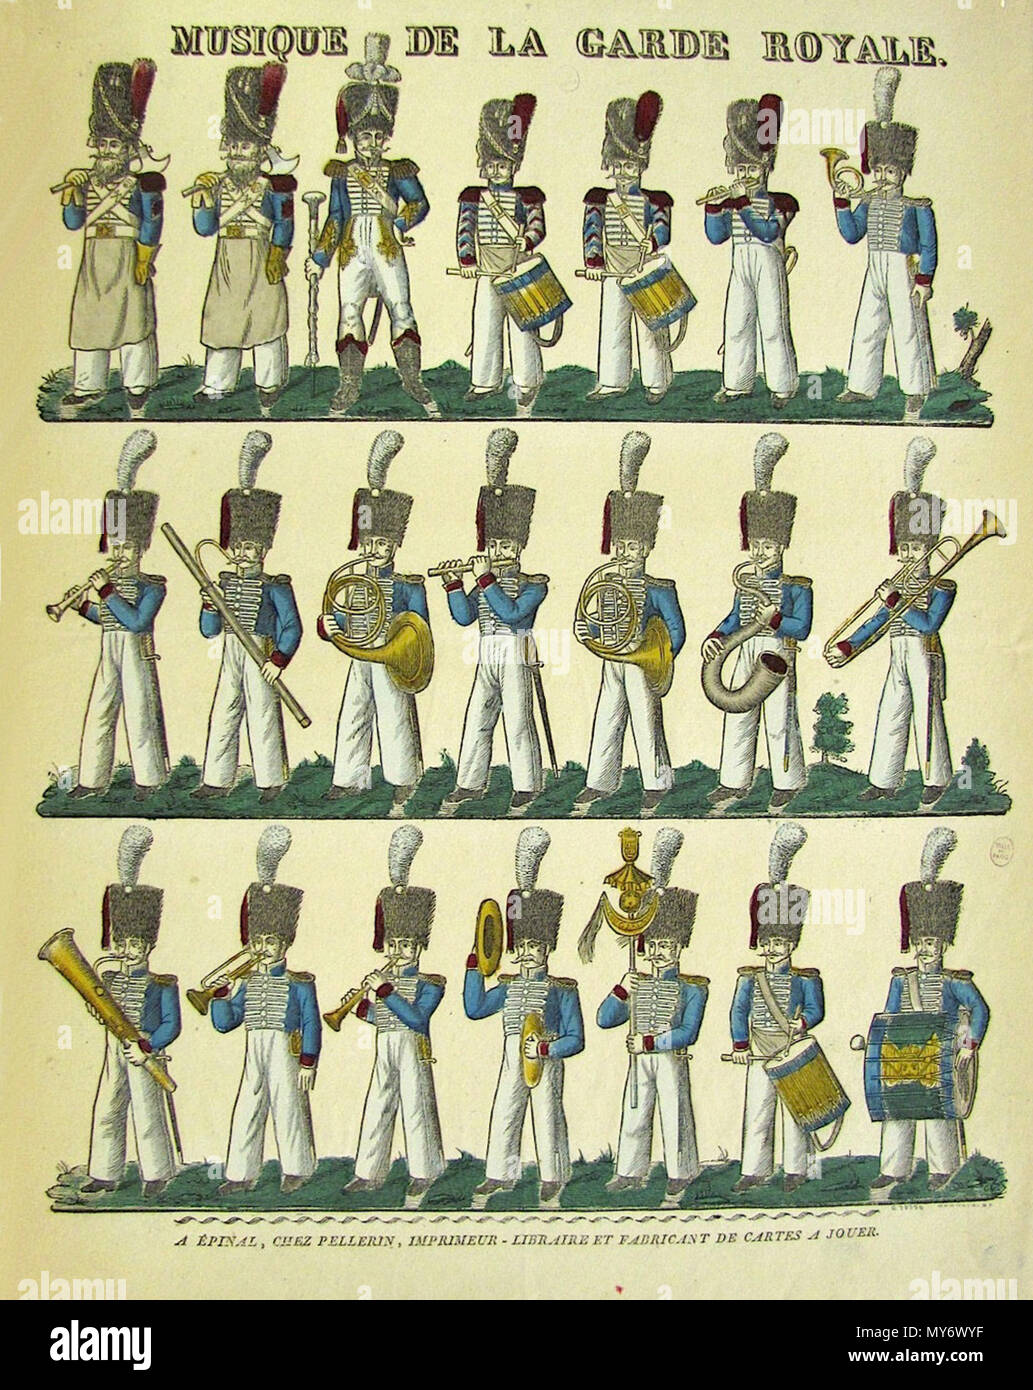 Français : Musique de la garde royale, Restauration. L'instrumentation a  évolué avec 2 tambours, une grosse caisse, une caisse roulante, des  cymbales, un chapeau chinois pour les percussions et flûtes, clarinette,